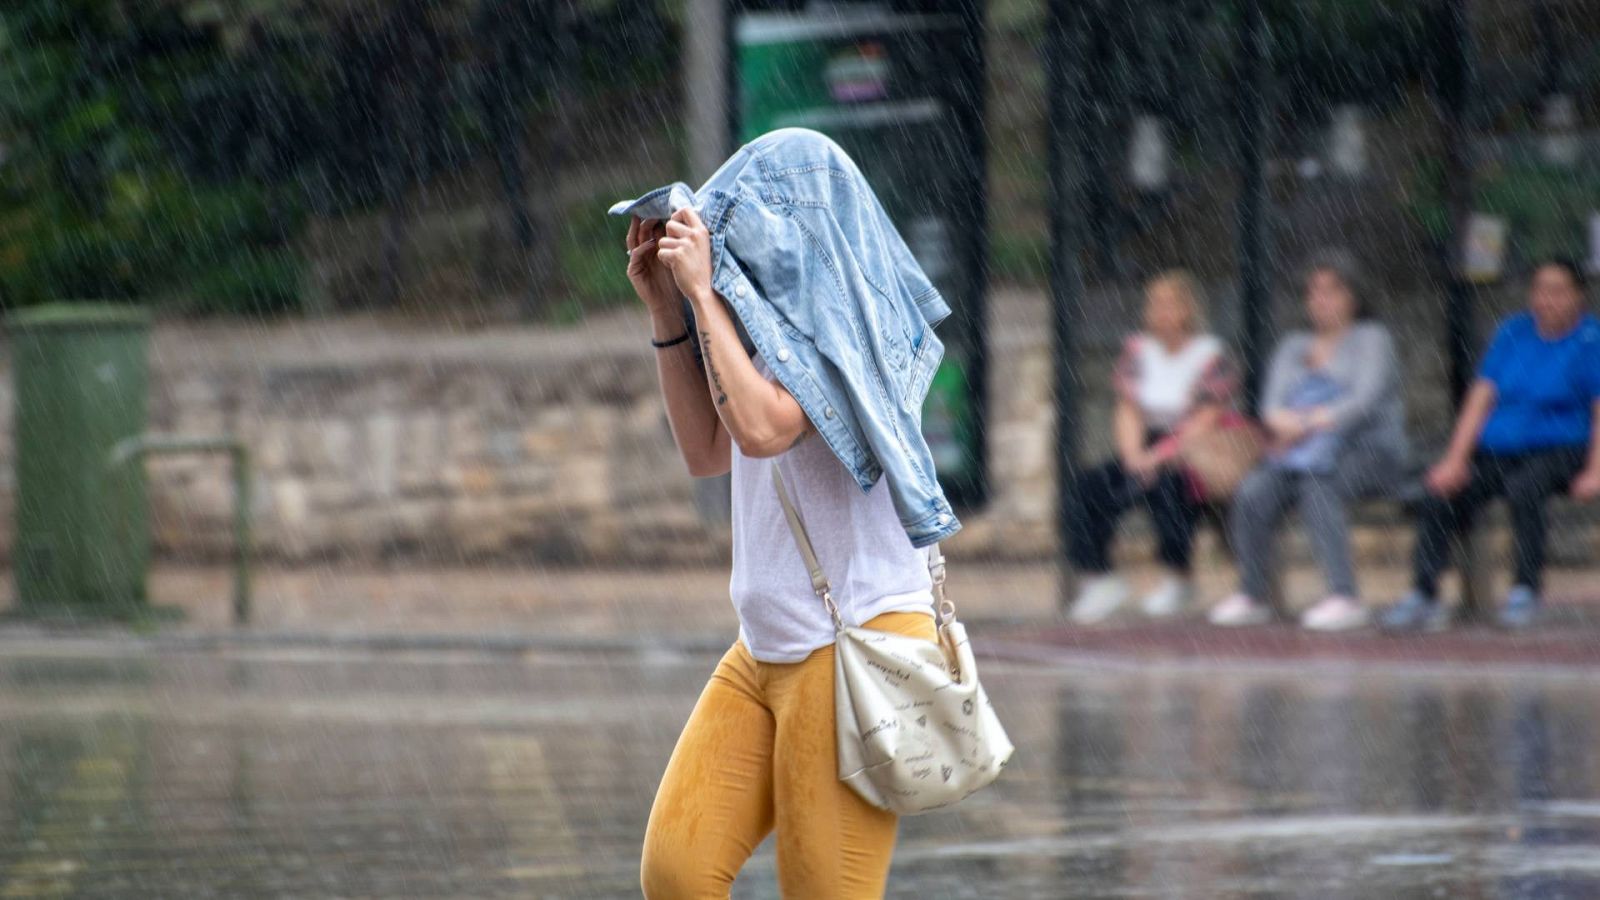 Una mujer se protege con la cazadora al comienzo súbito de la lluvia hoy en Jaén capital